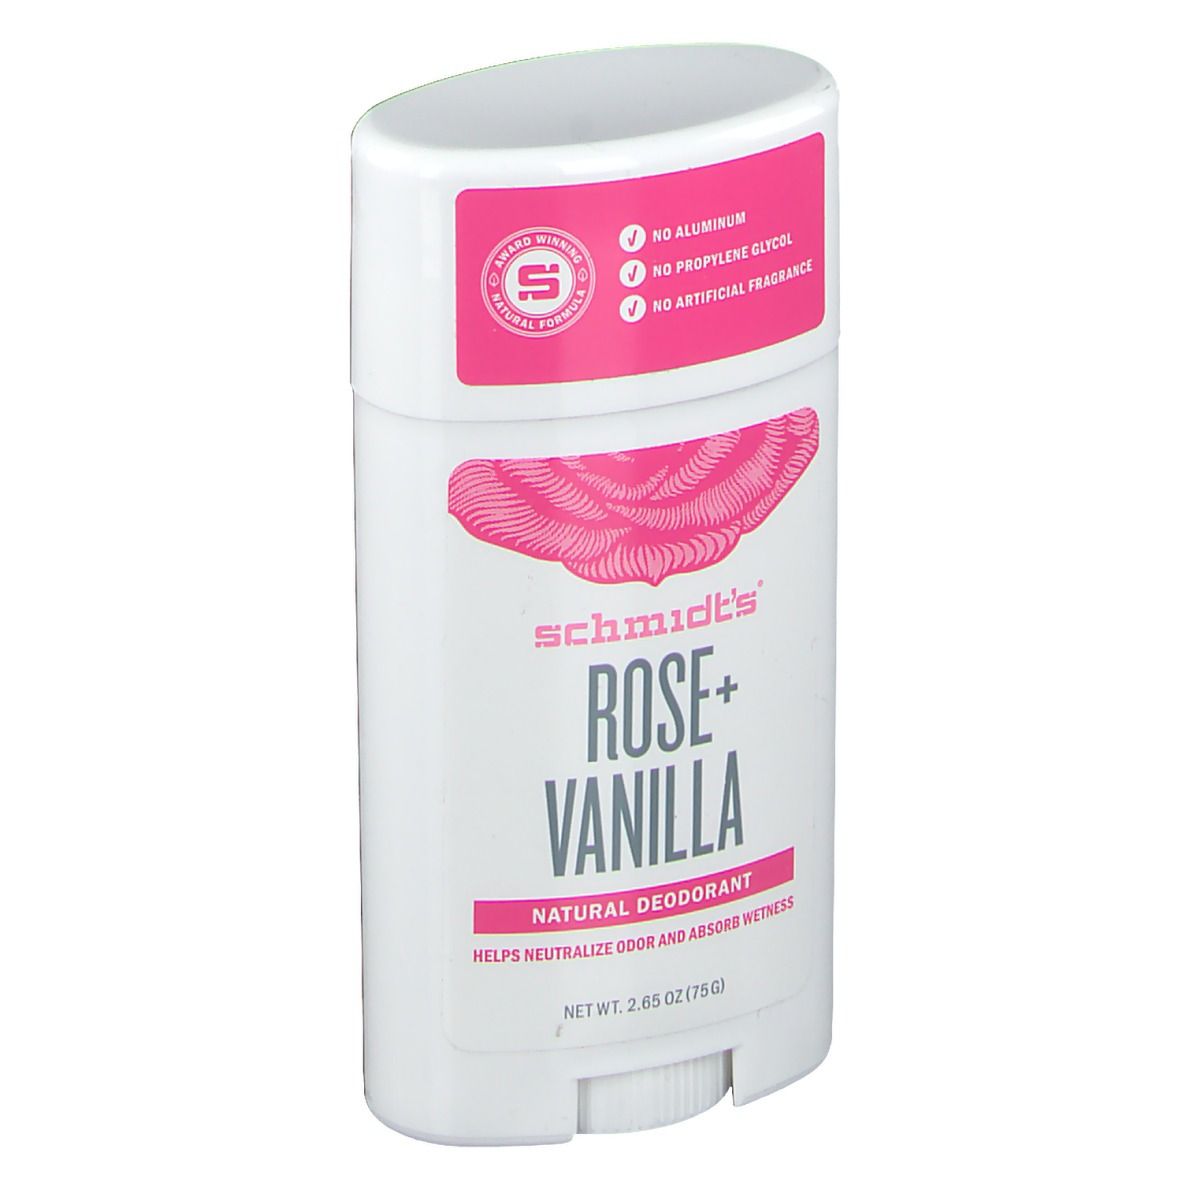 Schmidt's® Deodorant Rose + Vanille